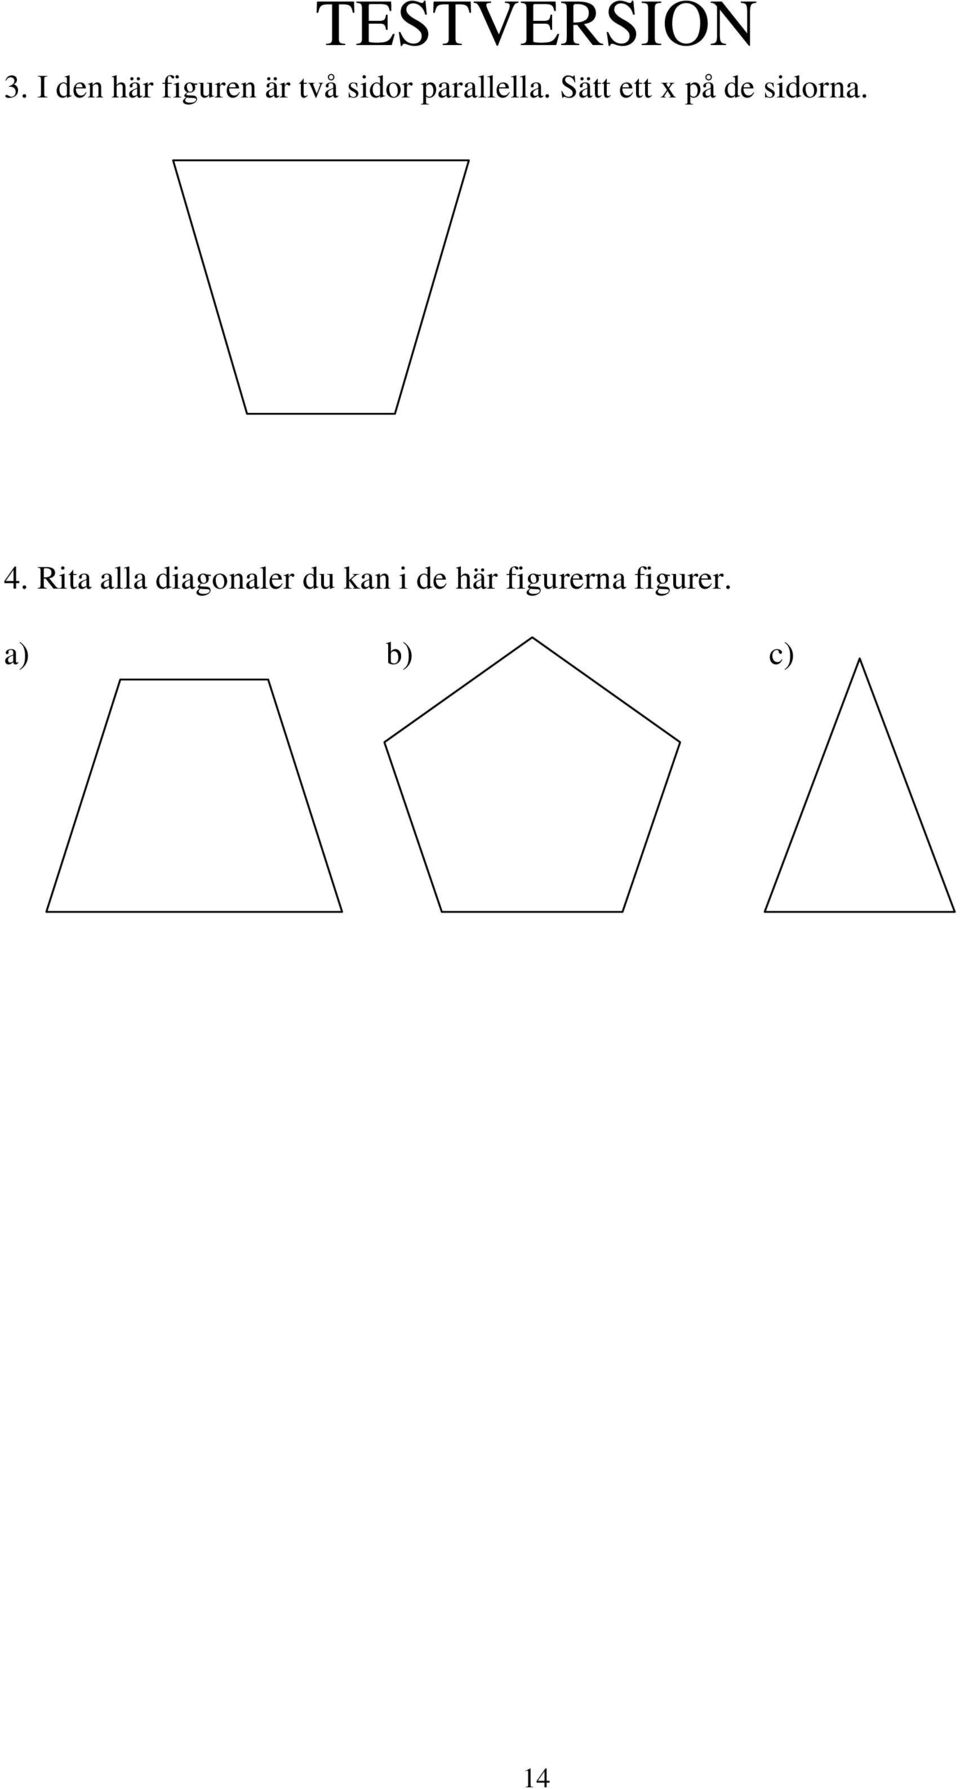 4. Rita alla diagonaler du kan i de